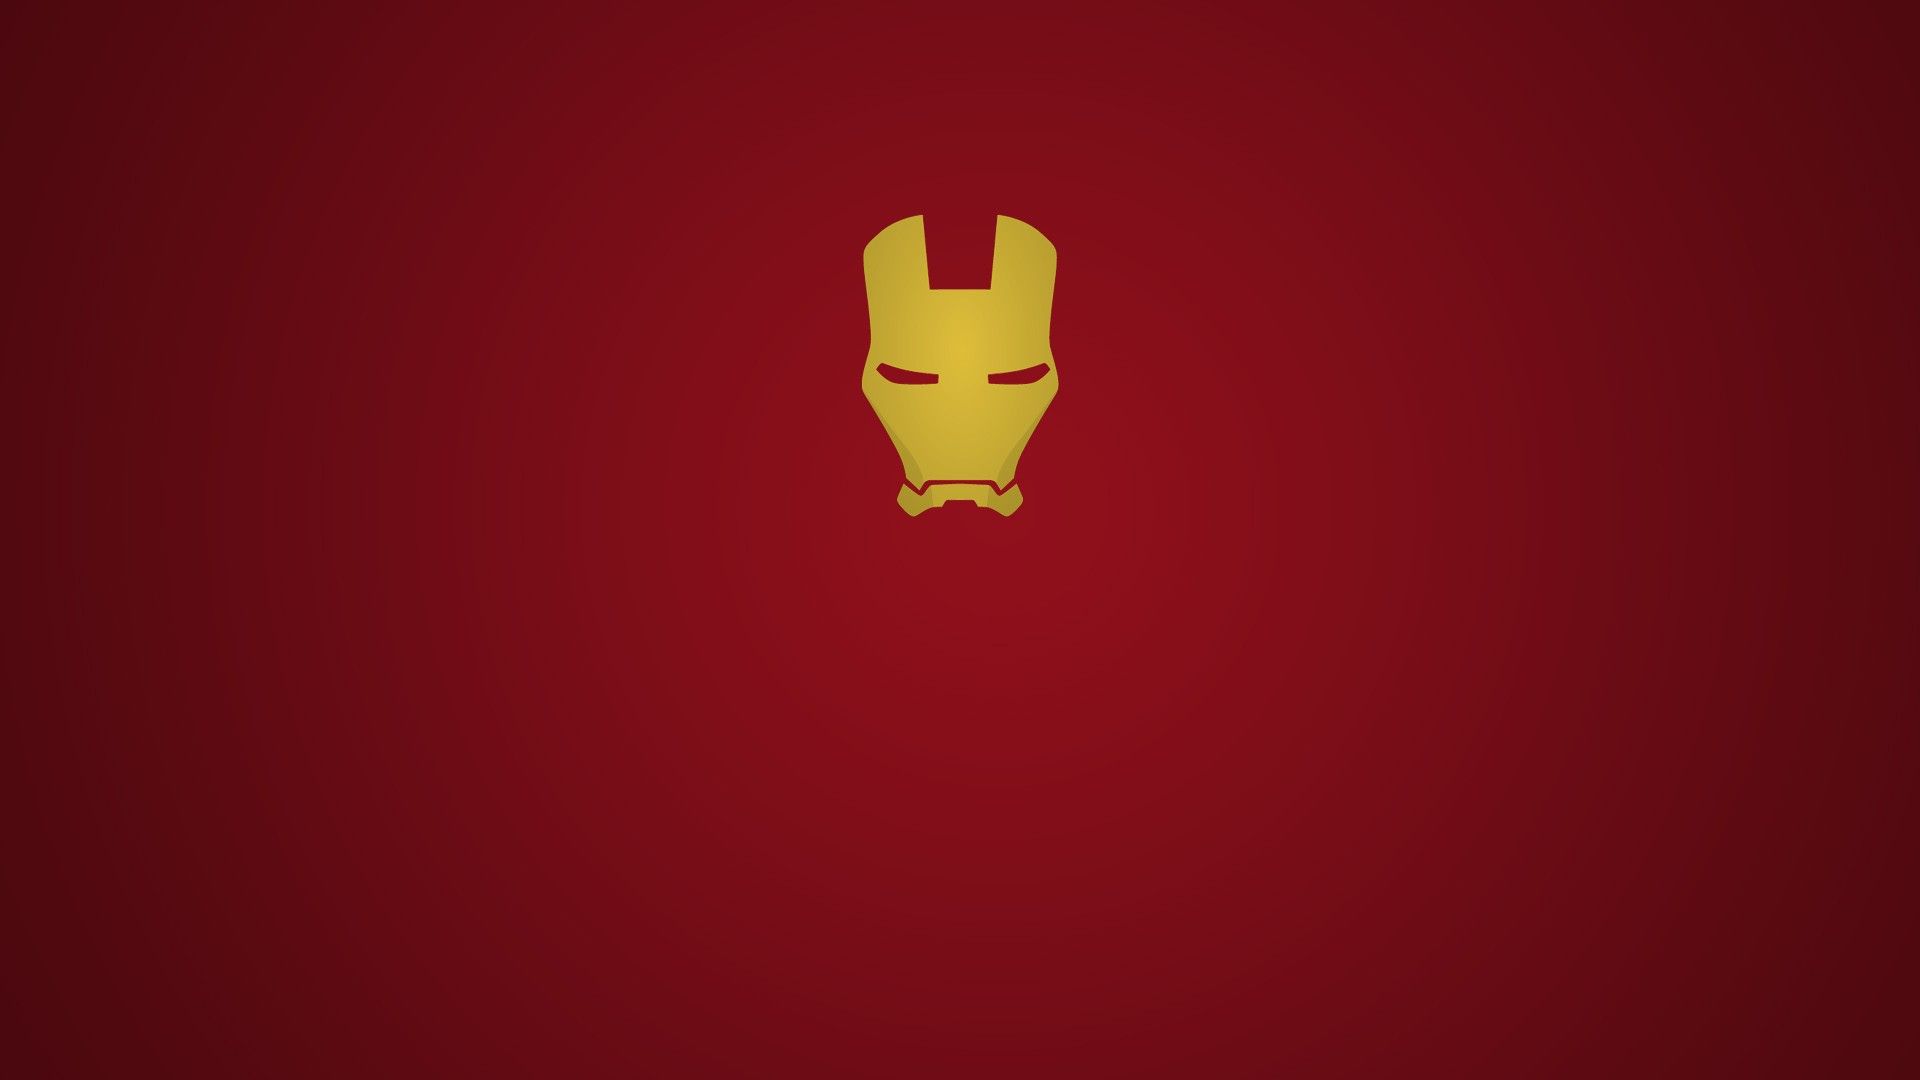 Golden Mask Iron Man, red background Desktop wallpaper 1280x800